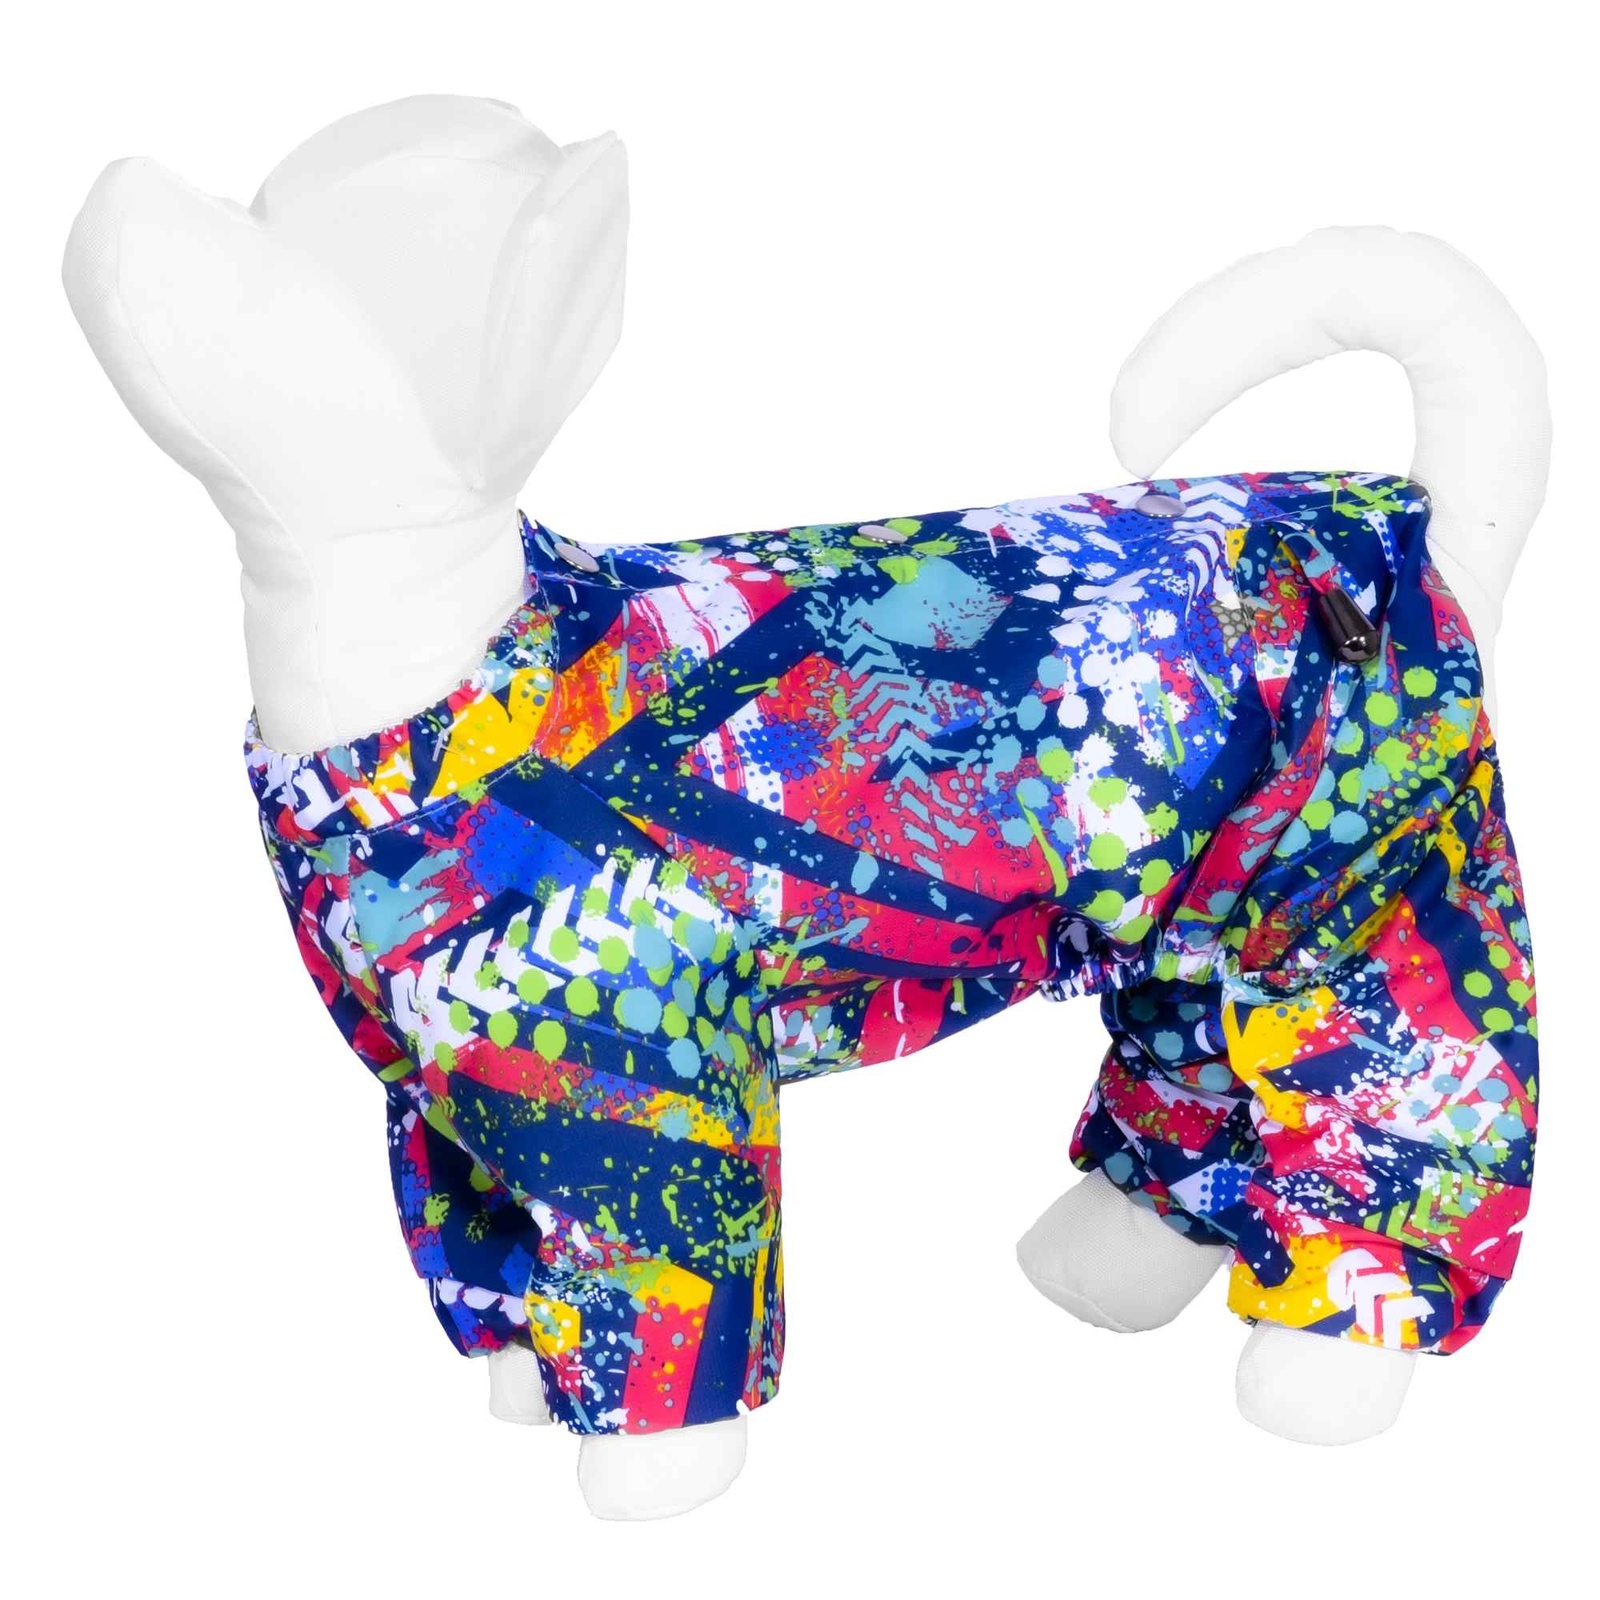 Yami-Yami одежда Yami-Yami одежда дождевик для собаки с рисунком «Абстракция», синий (M)